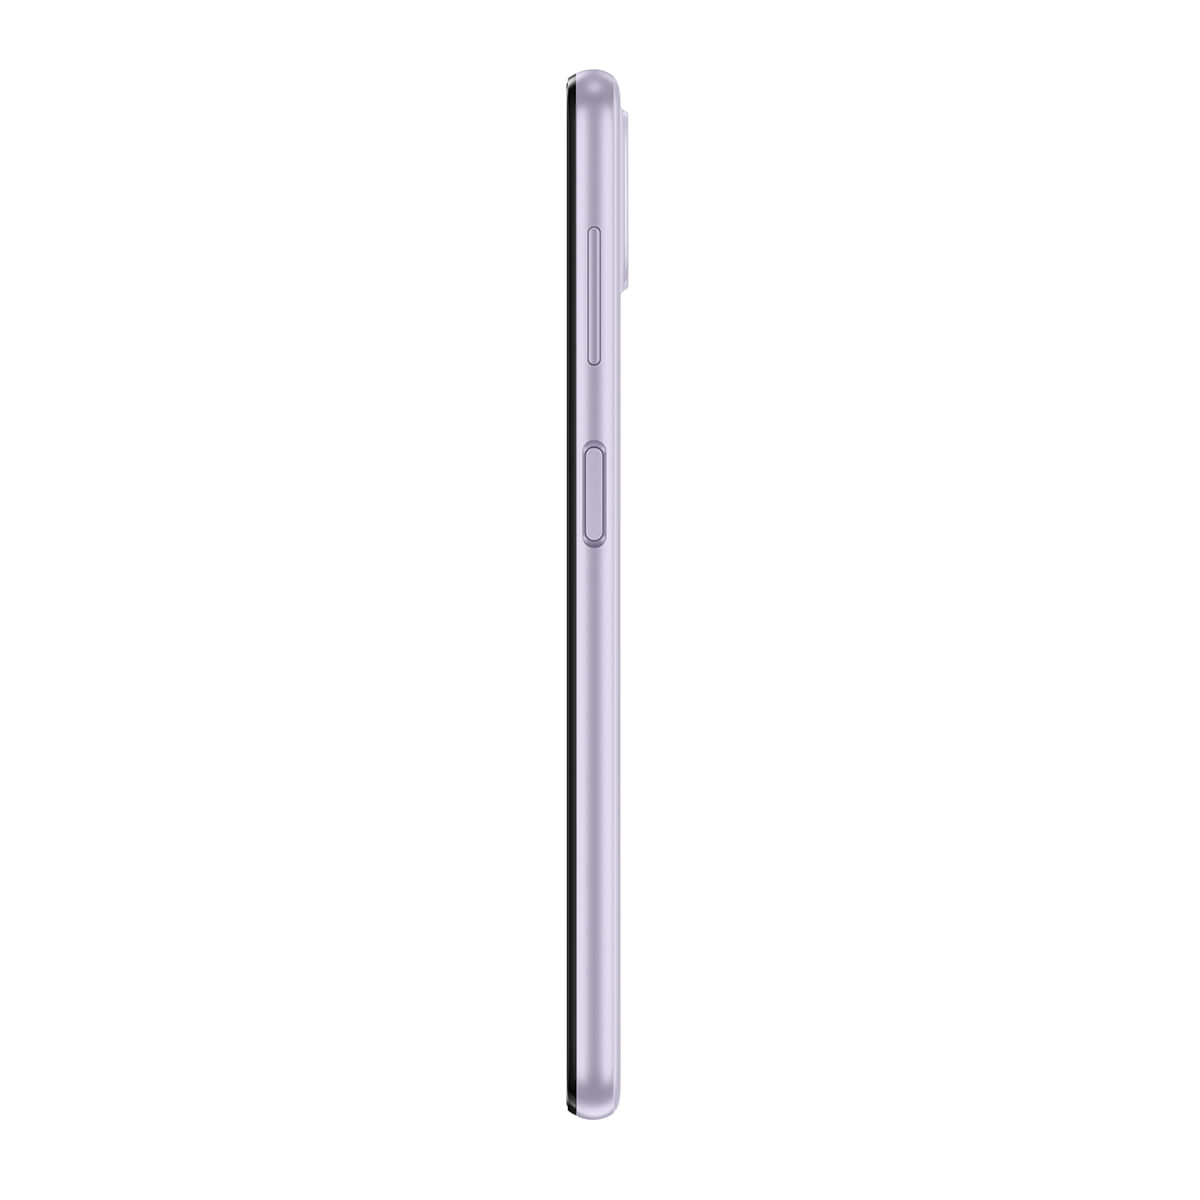 Smartphone Samsung Galaxy A22 128GB Violeta 4G Tela 6.4" Câmera Quadrupla Selfie 13MP Perfil Esquerdo